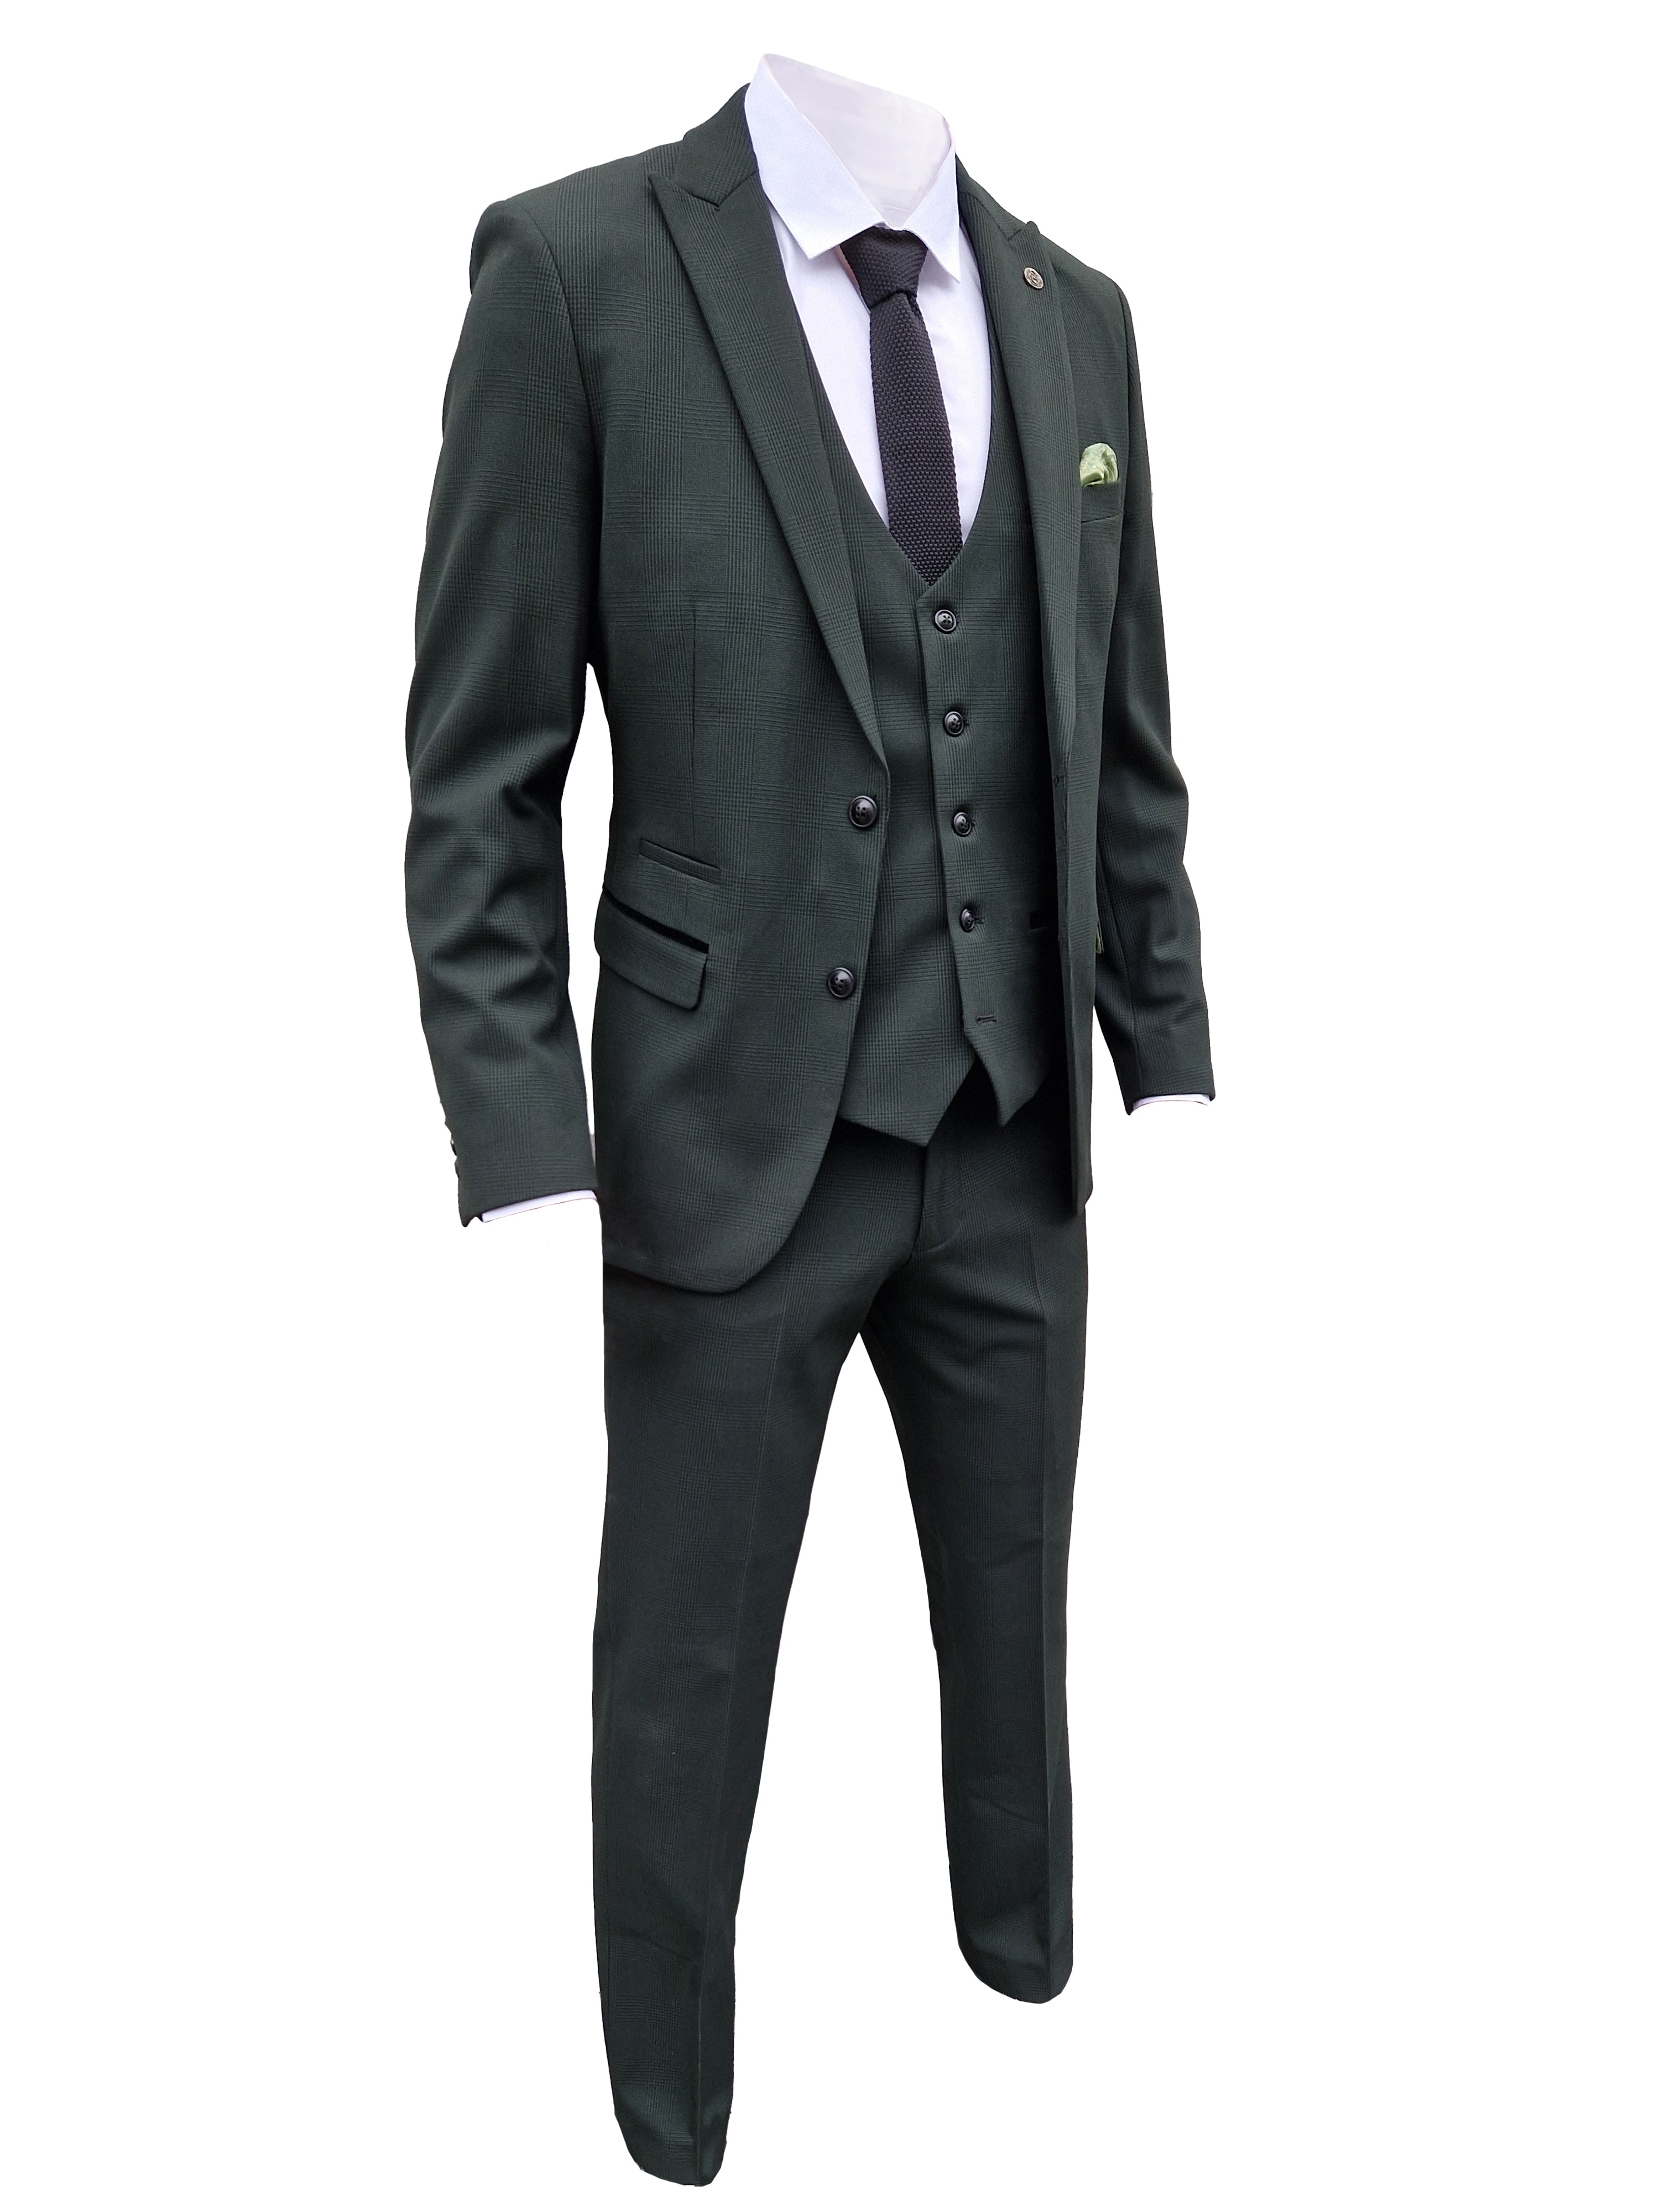 3-delig olive green heren kostuum geruit - Marc Darcy Bromley Olive suit